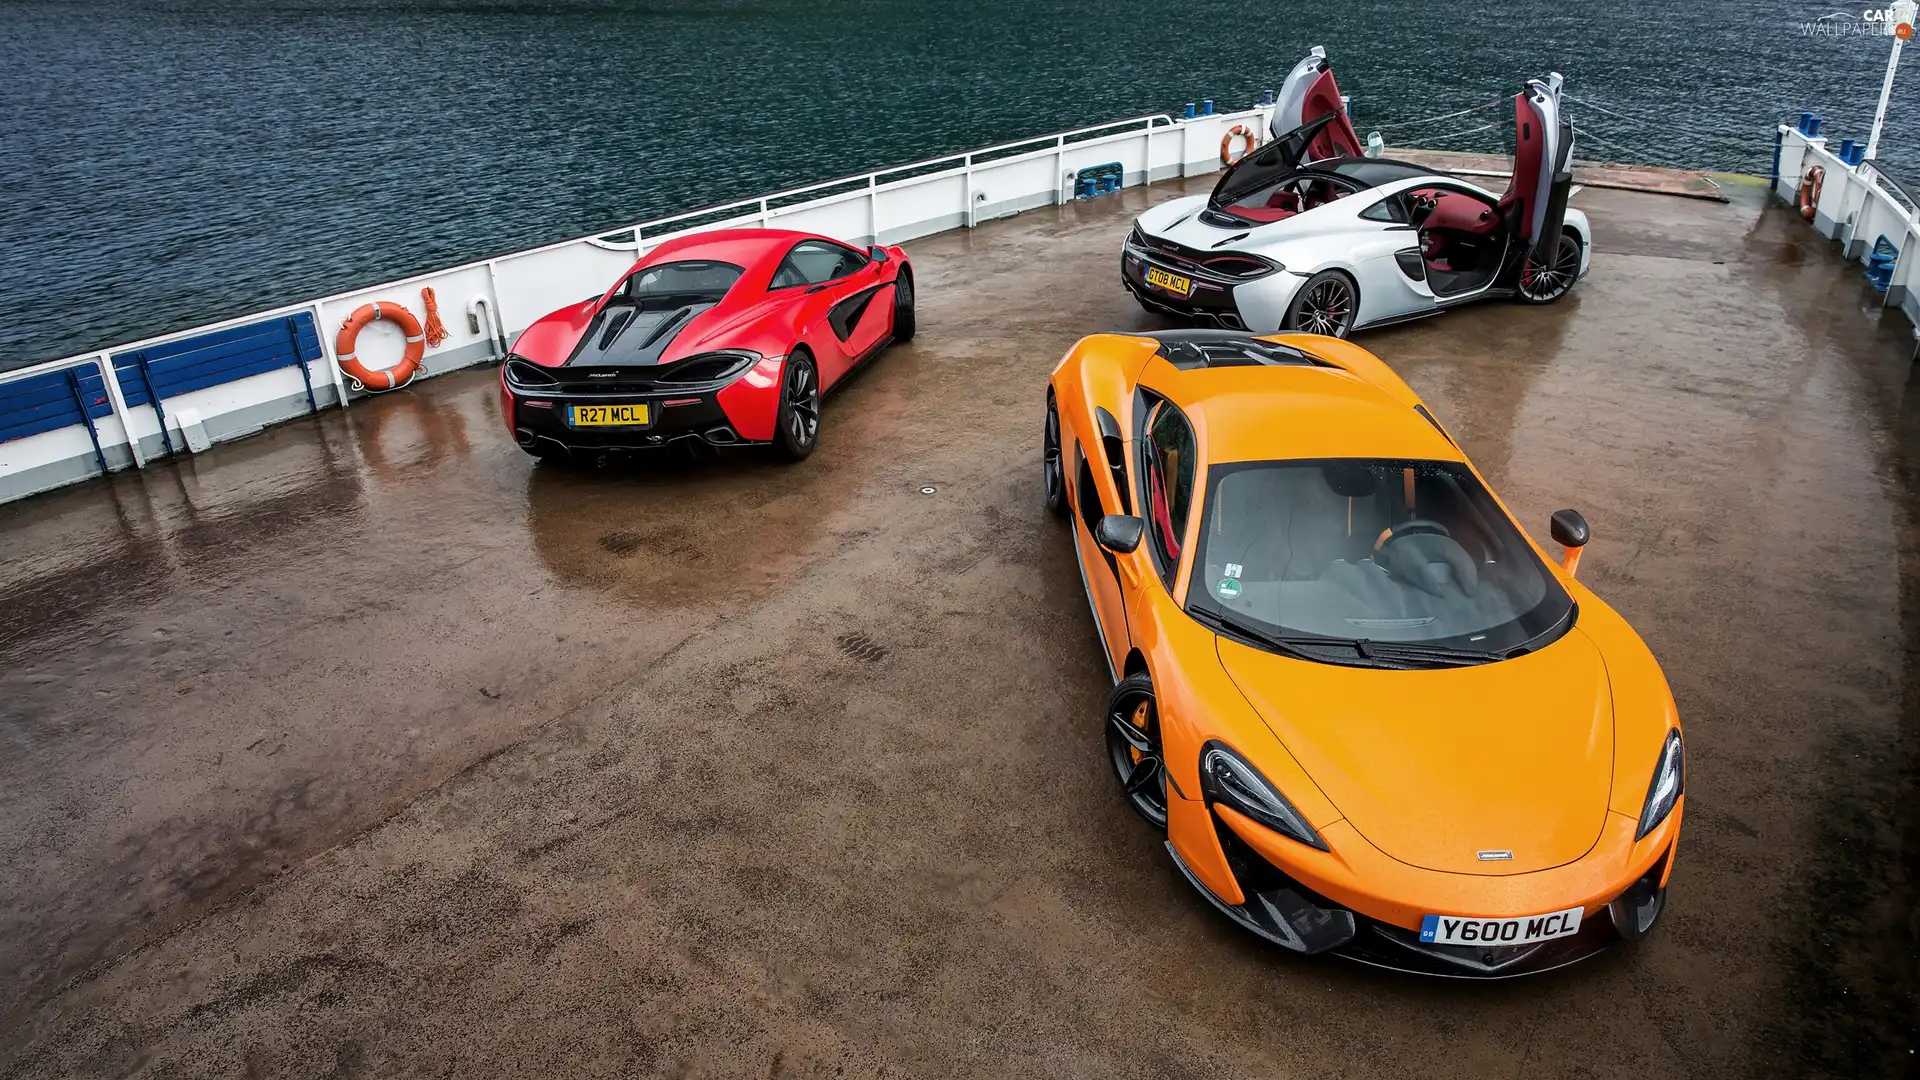 McLaren, Three, cars